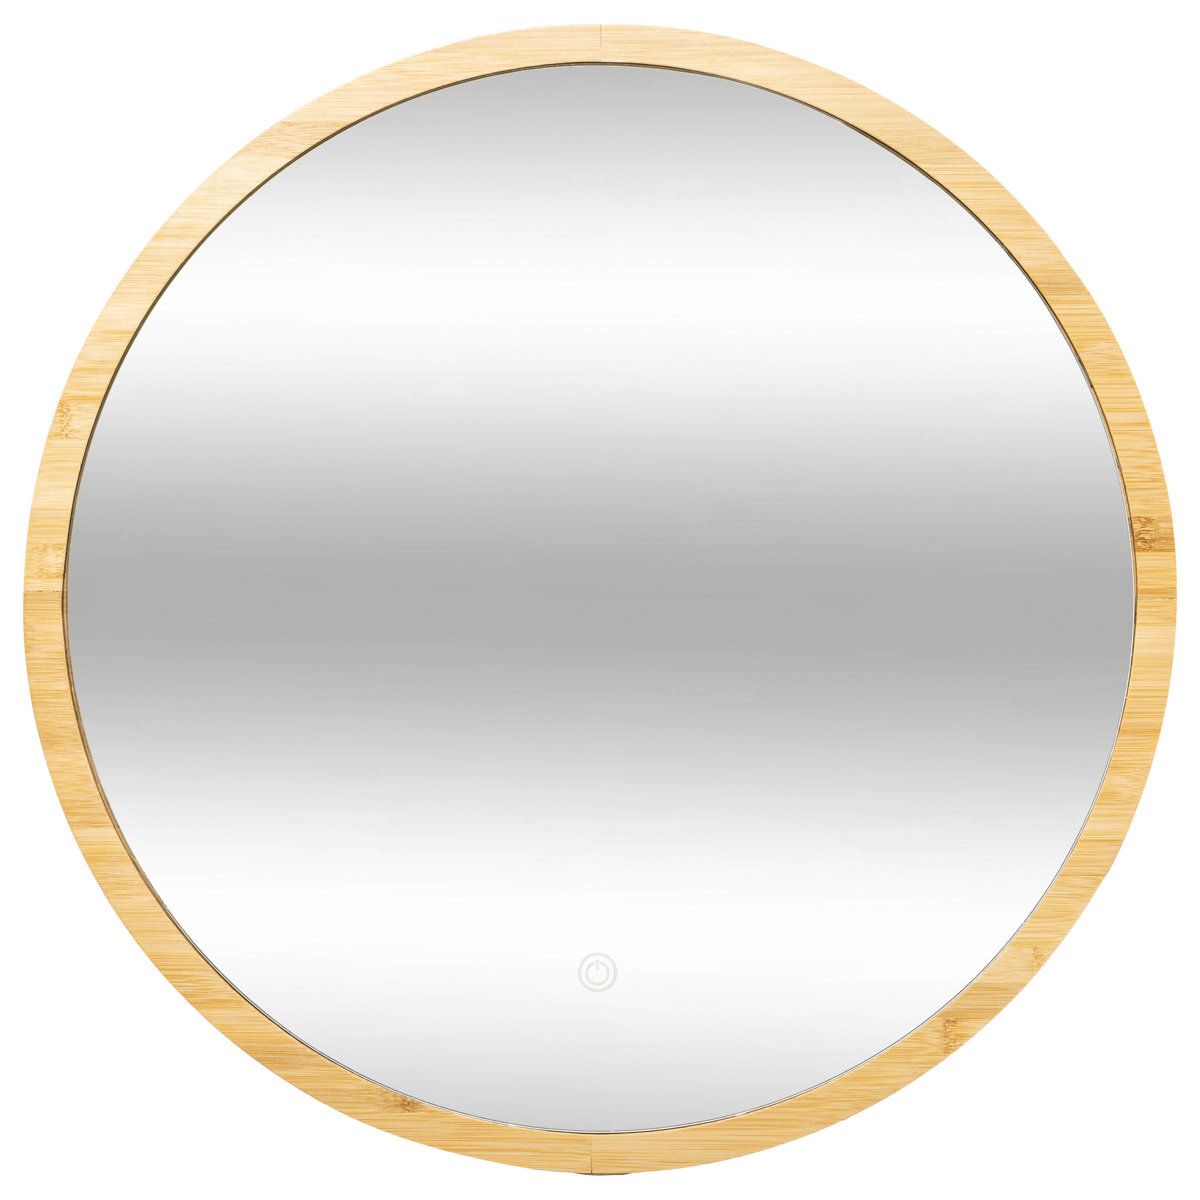 5five Simply Smart Koupelnové zrcadlo s LED podsvícením, bambusový rám, O 57 cm - EMAKO.CZ s.r.o.